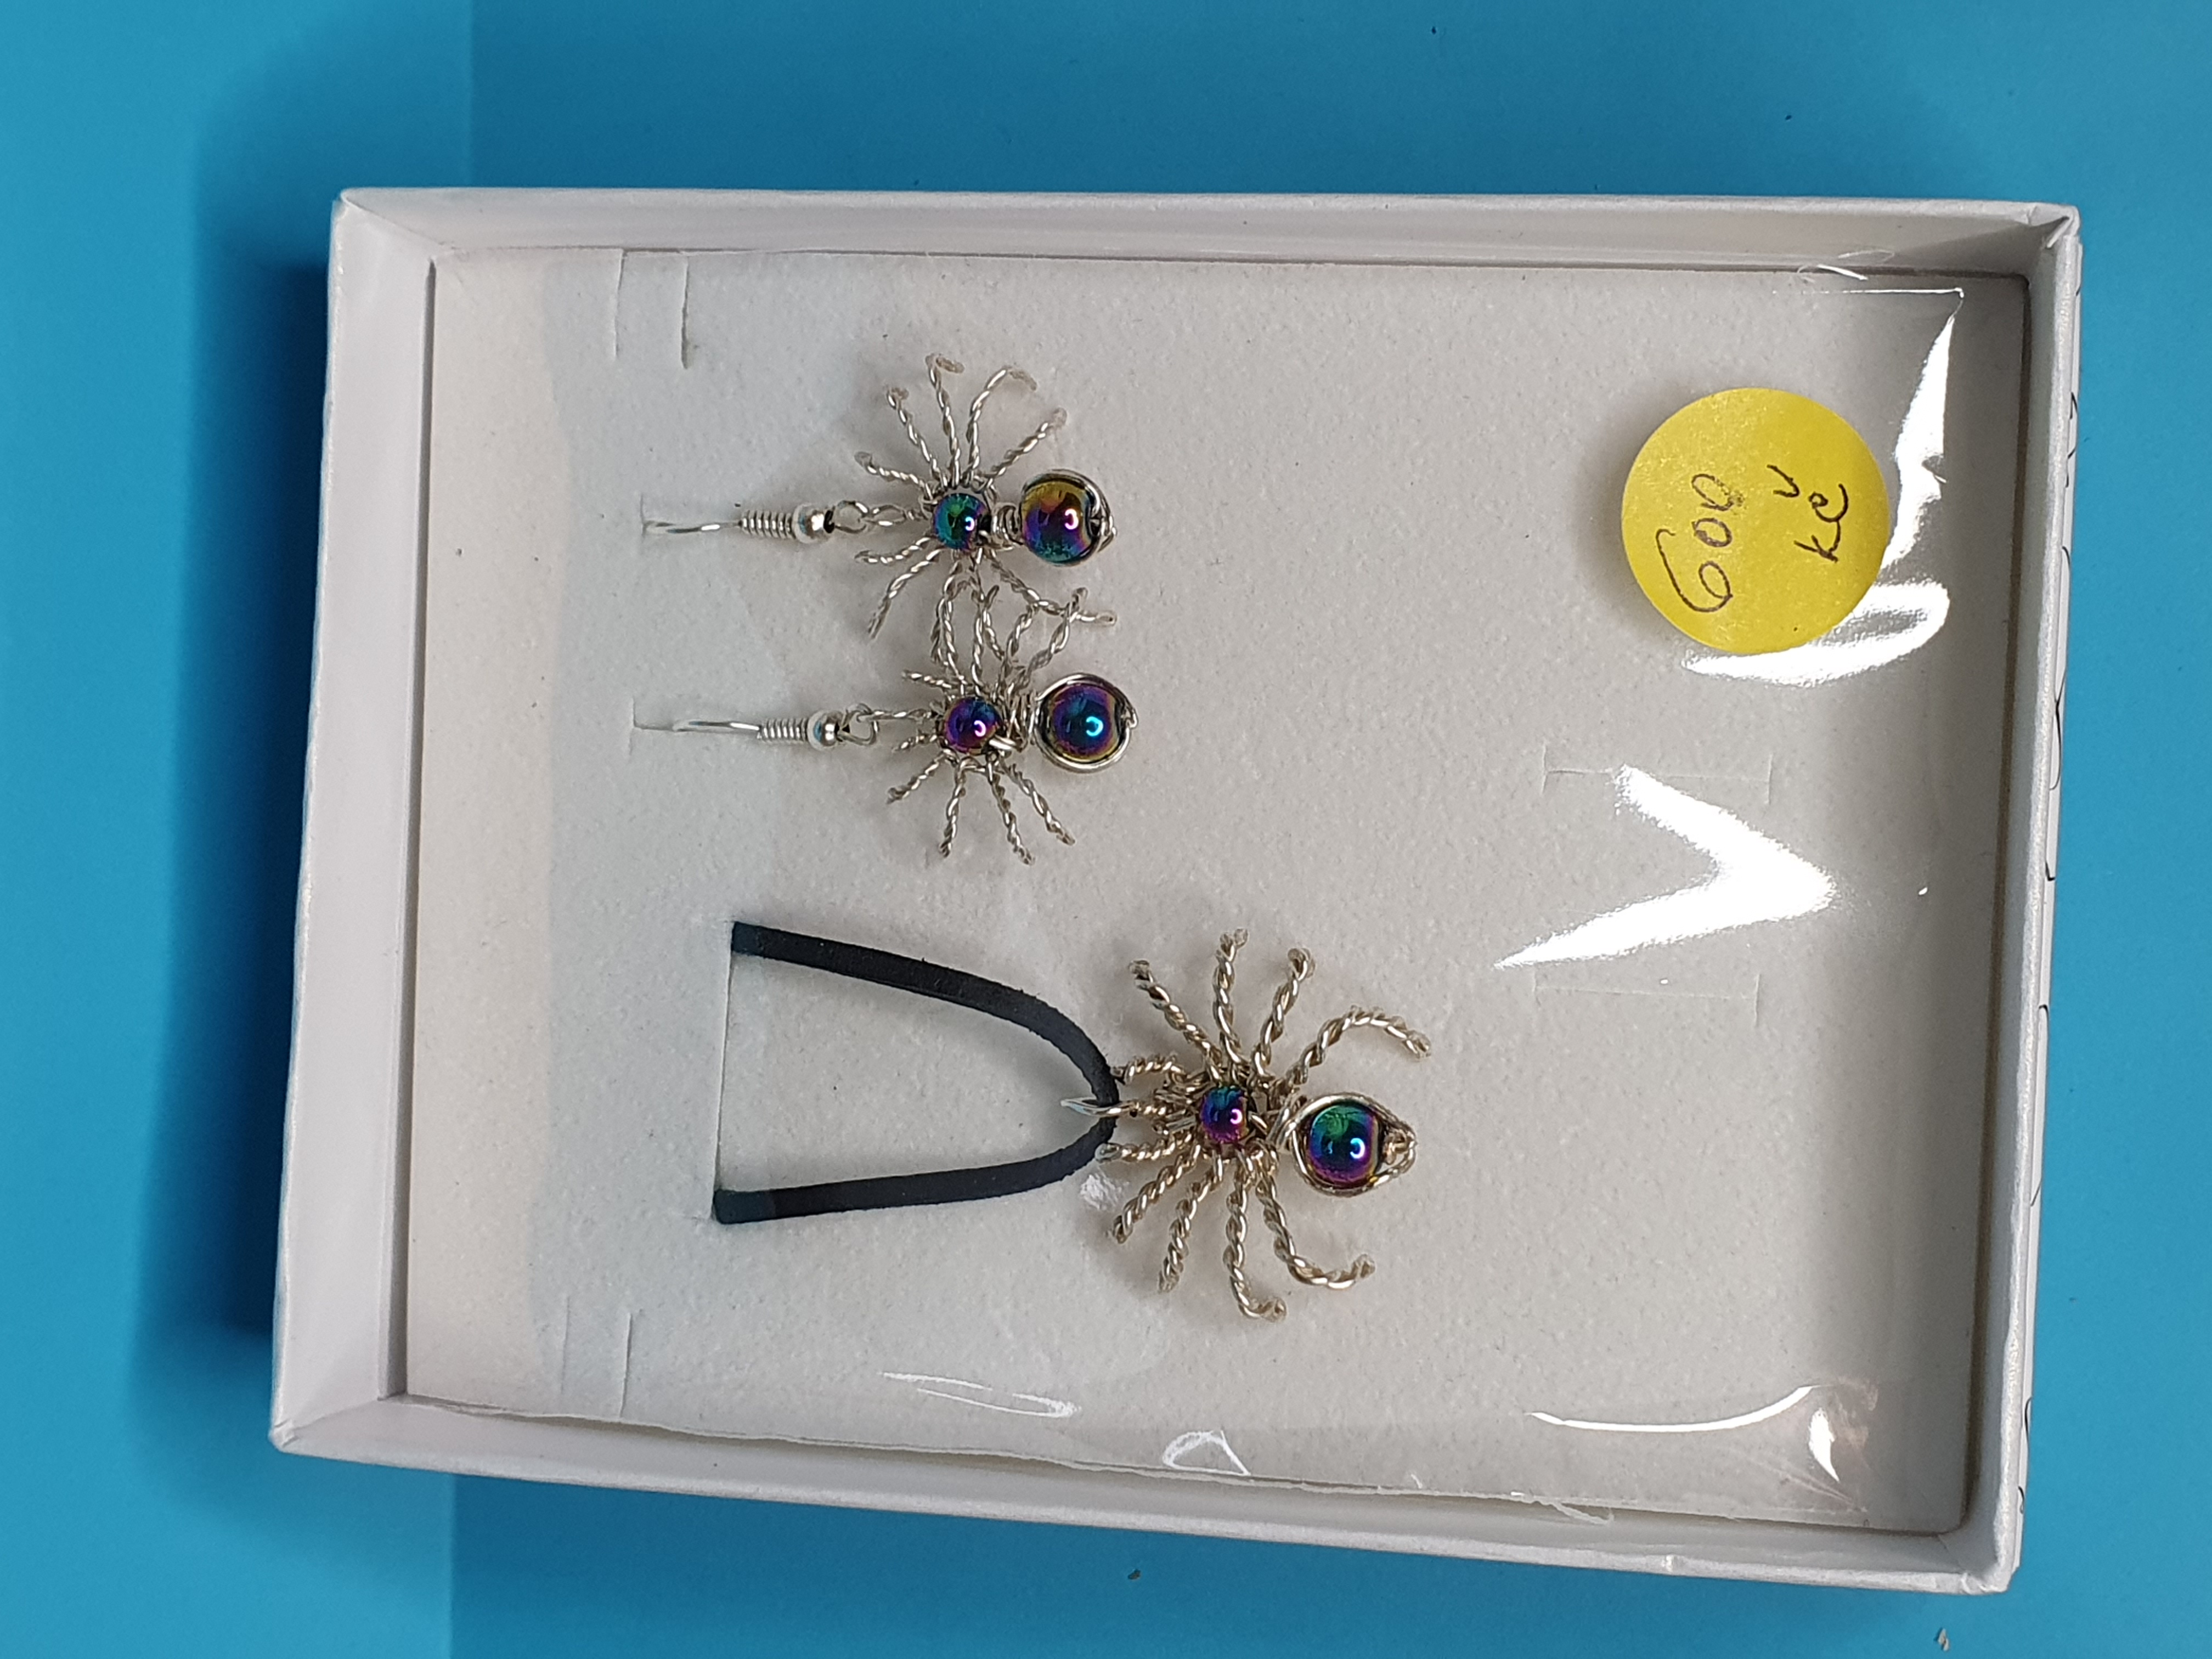 Drátkovaný set - Pavoučci - Hematit duhový. Velikost 2,5 x 2,5 cm. Cena 600 Kč